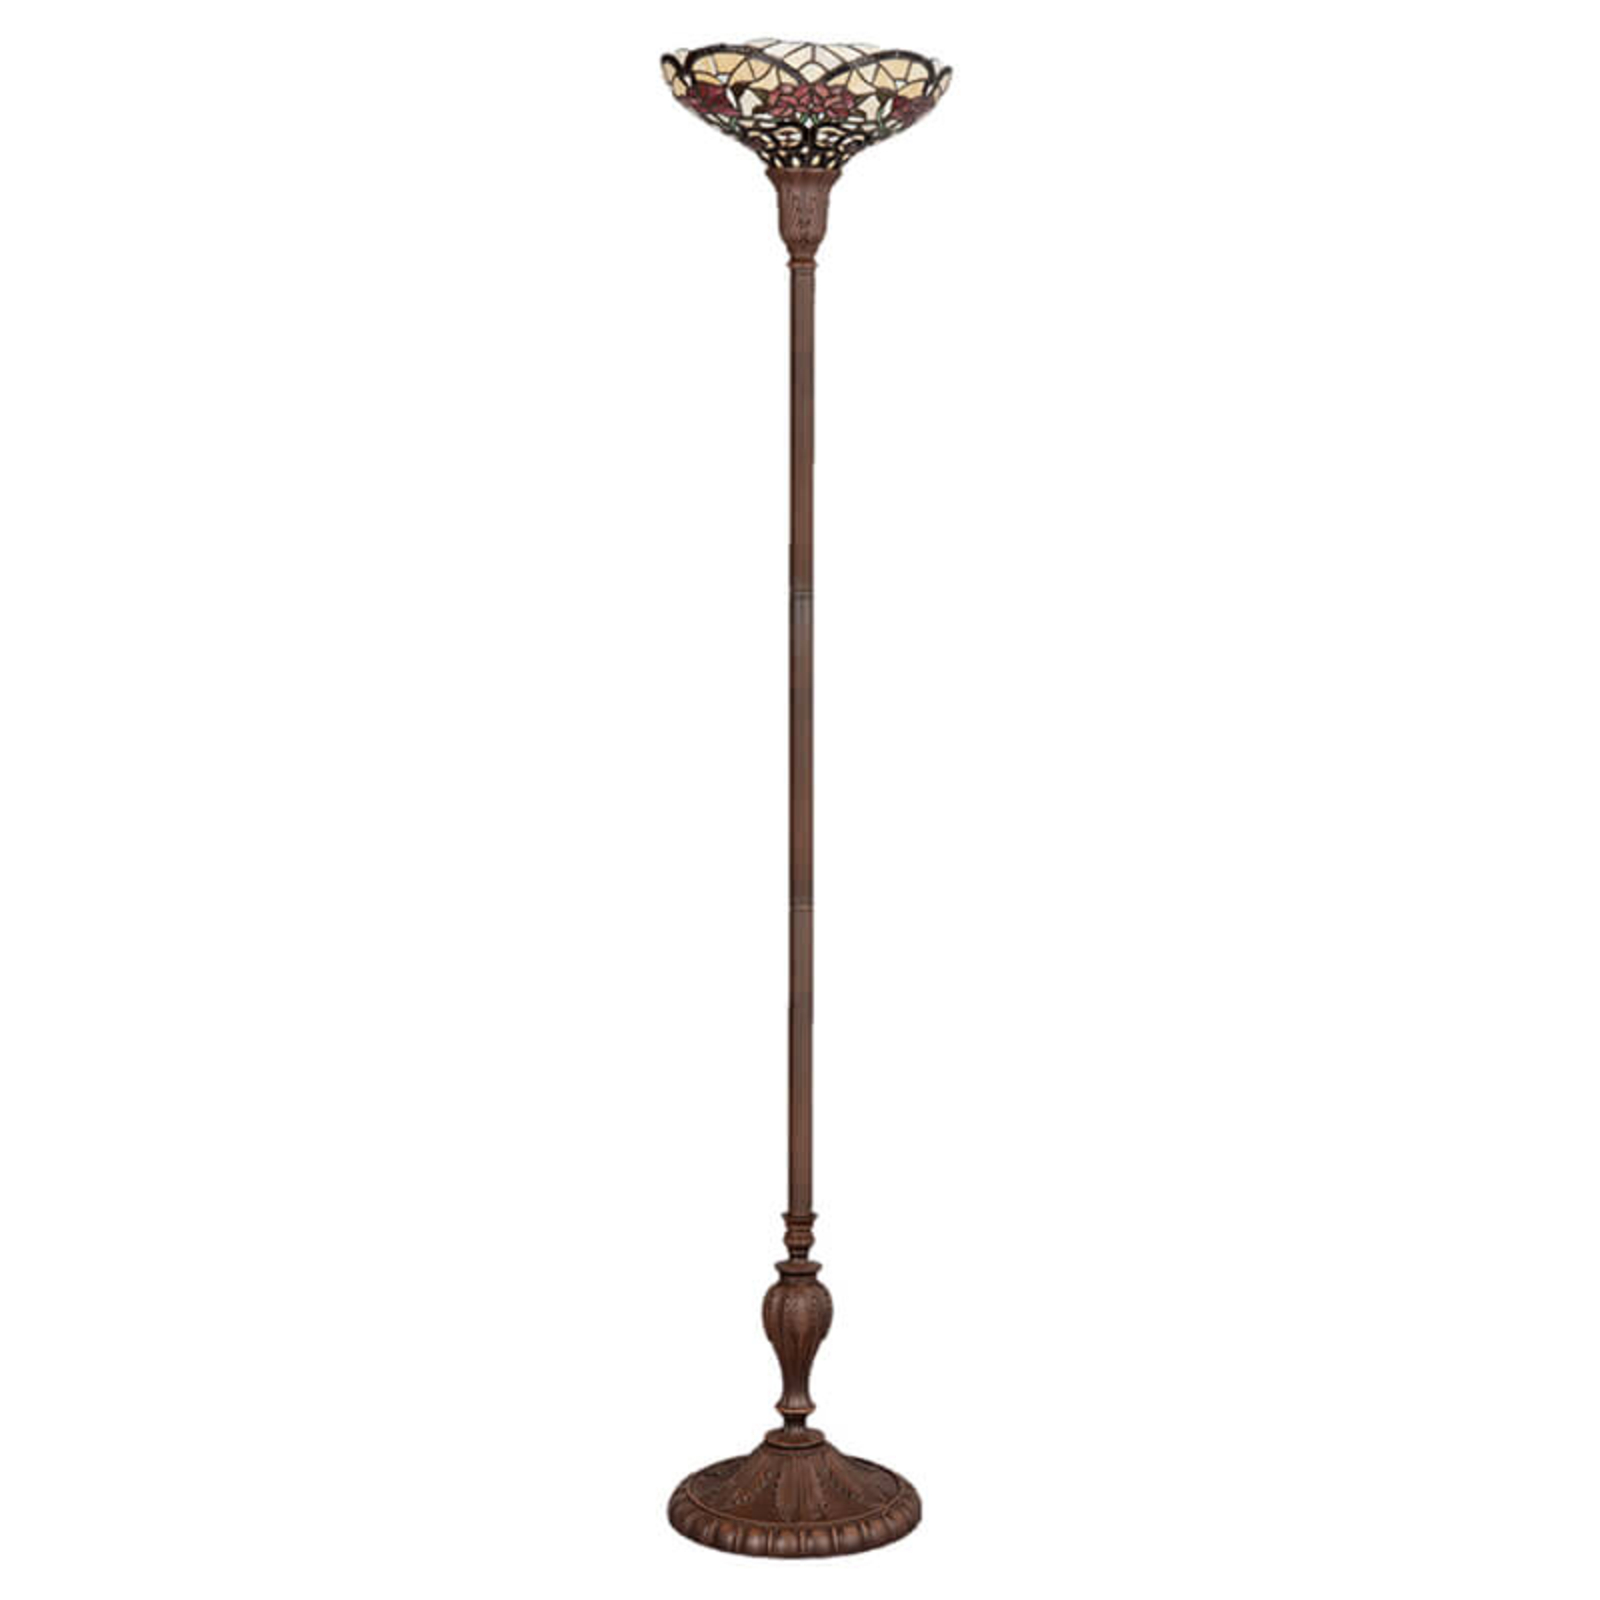 Svěží stojací lampa Kayla v Tiffany stylu